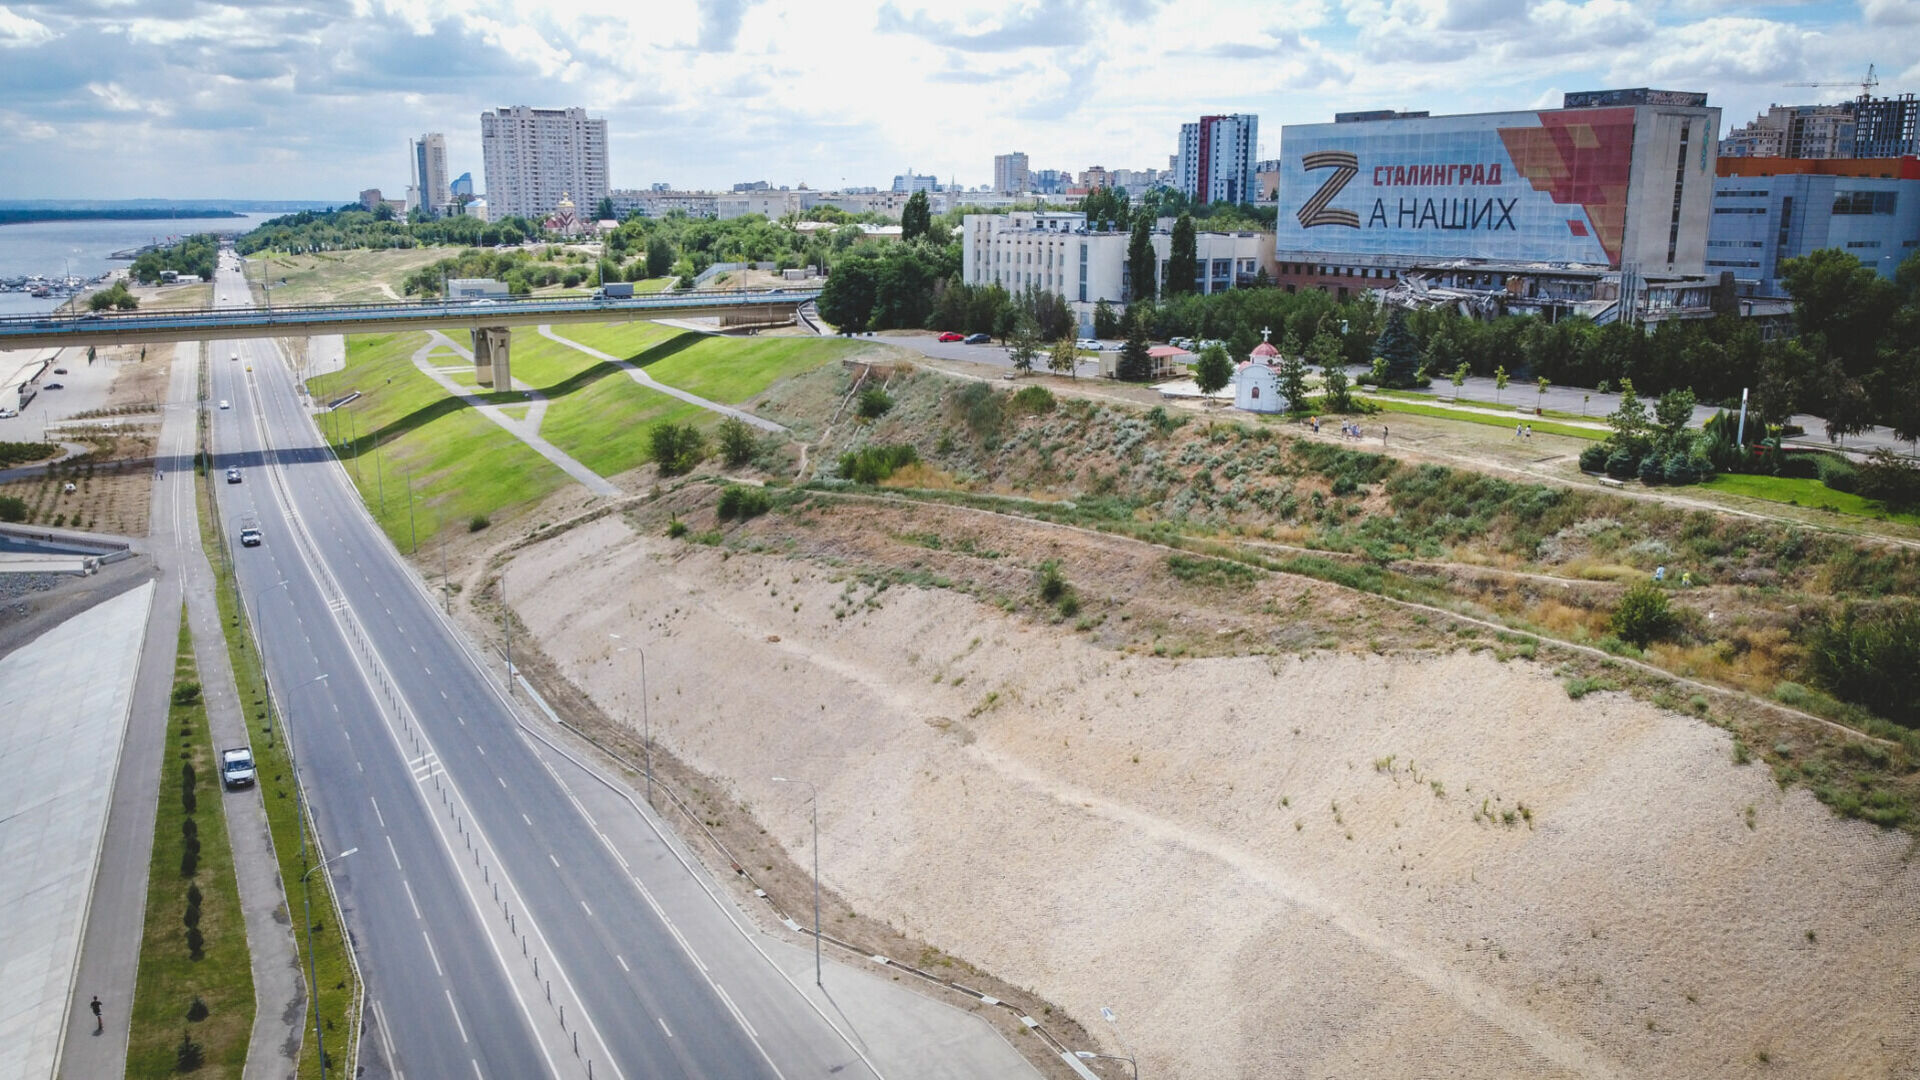 Нулевая Продольная магистраль станет пешеходной в Волгограде.